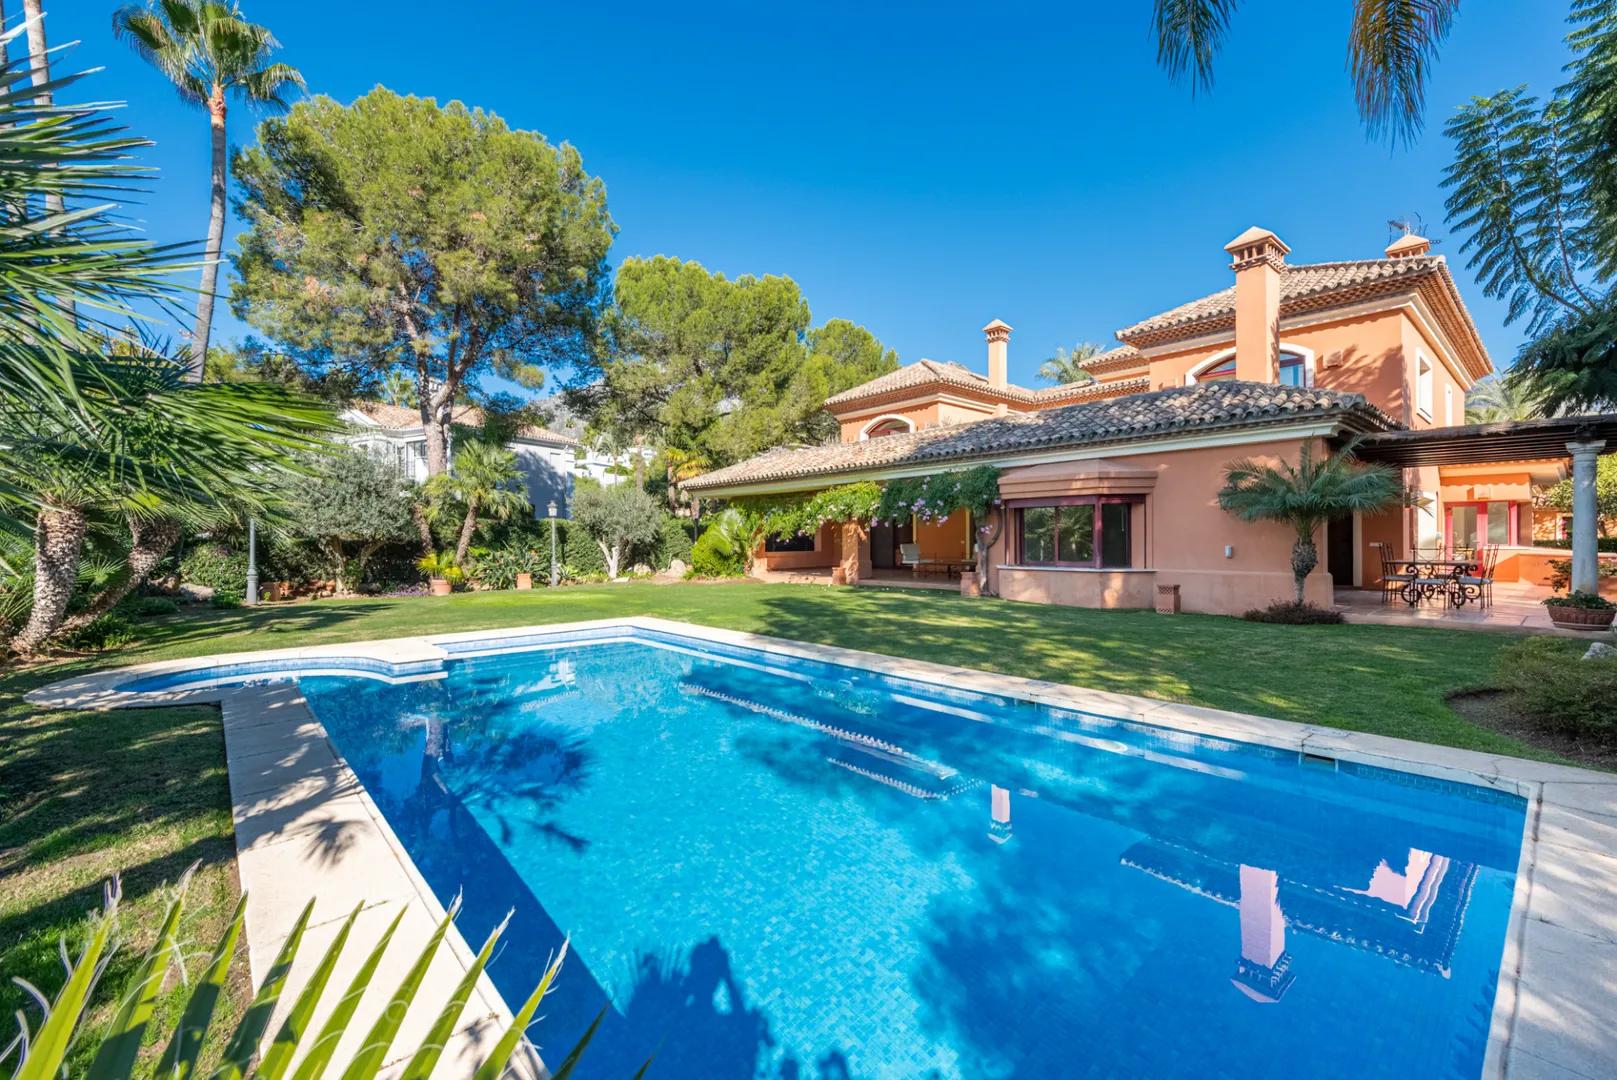 Villa andaluza en comunidad cerrada con jardines, piscina y seguridad